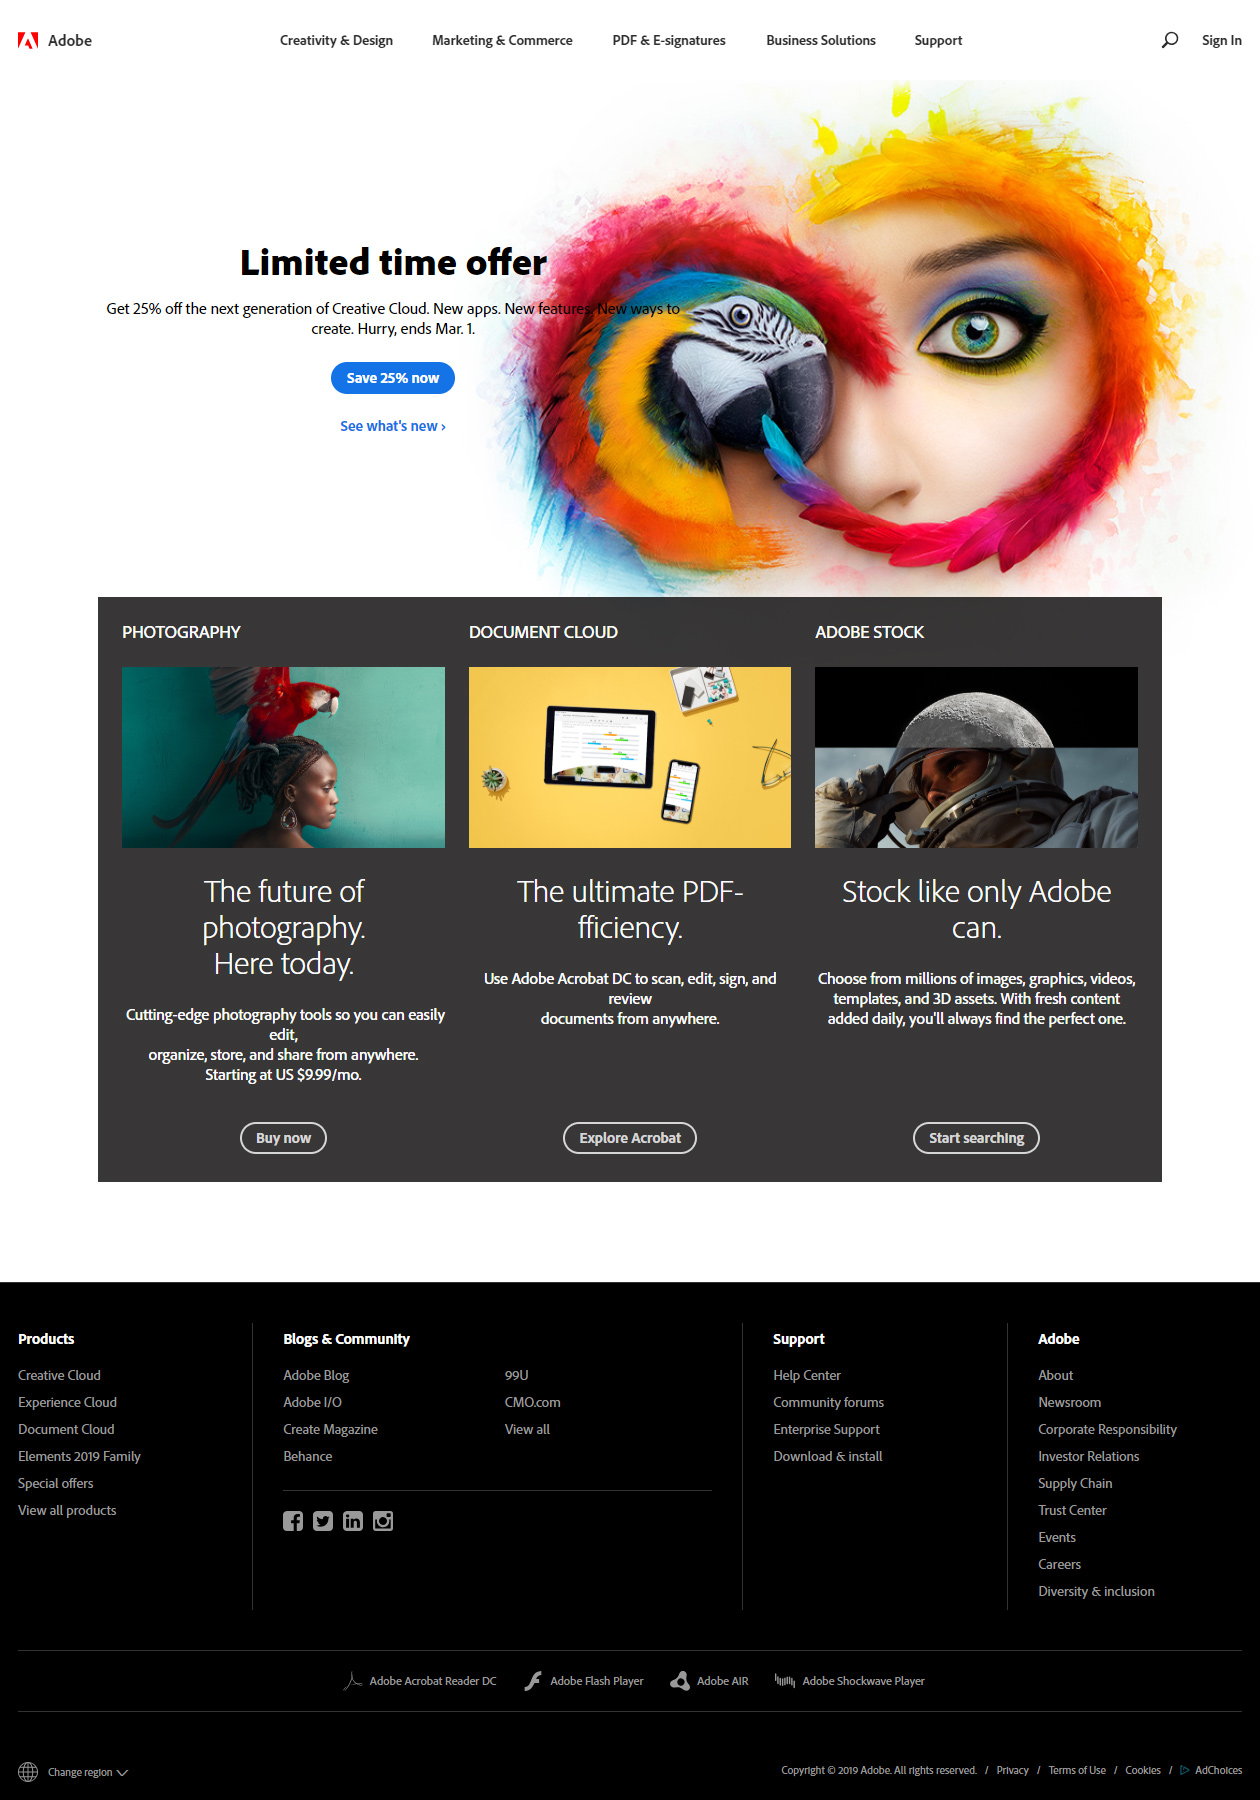 Adobe website in 2019